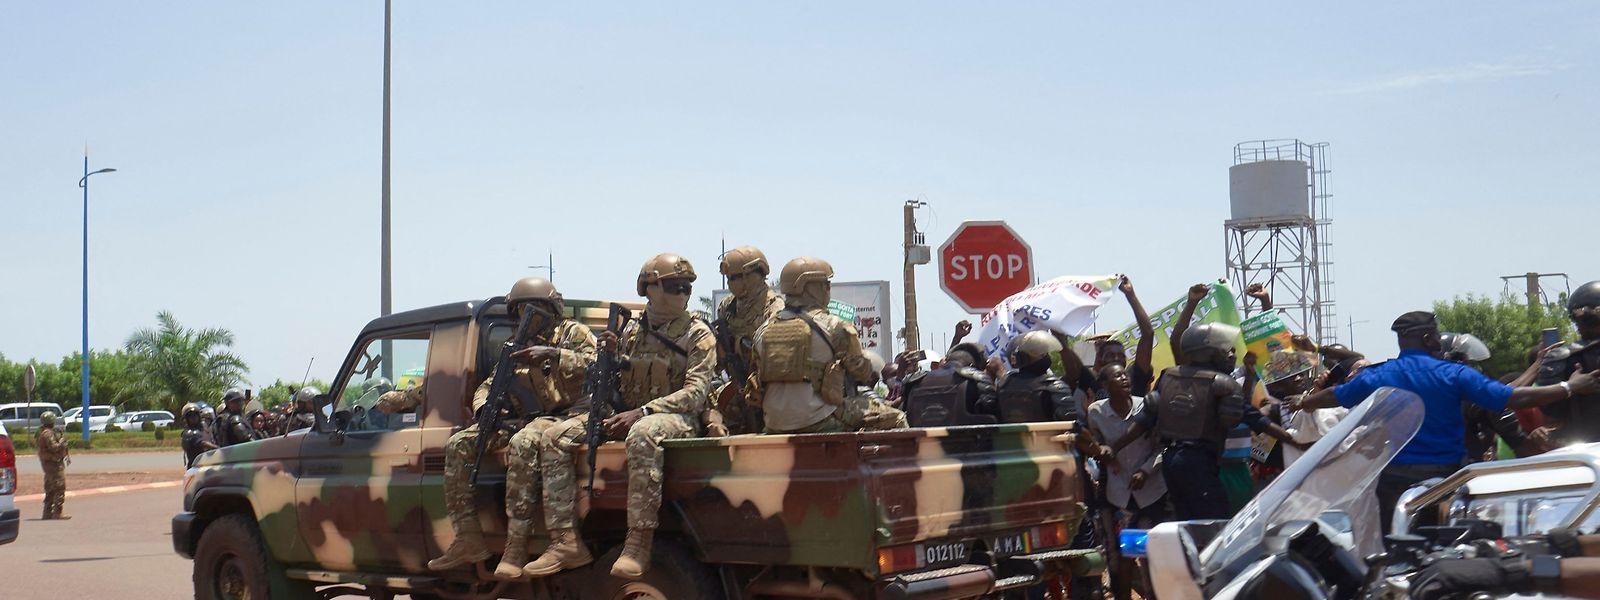 Die Lage in Mali hat sich nach dem Putsch noch nicht beruhigt.